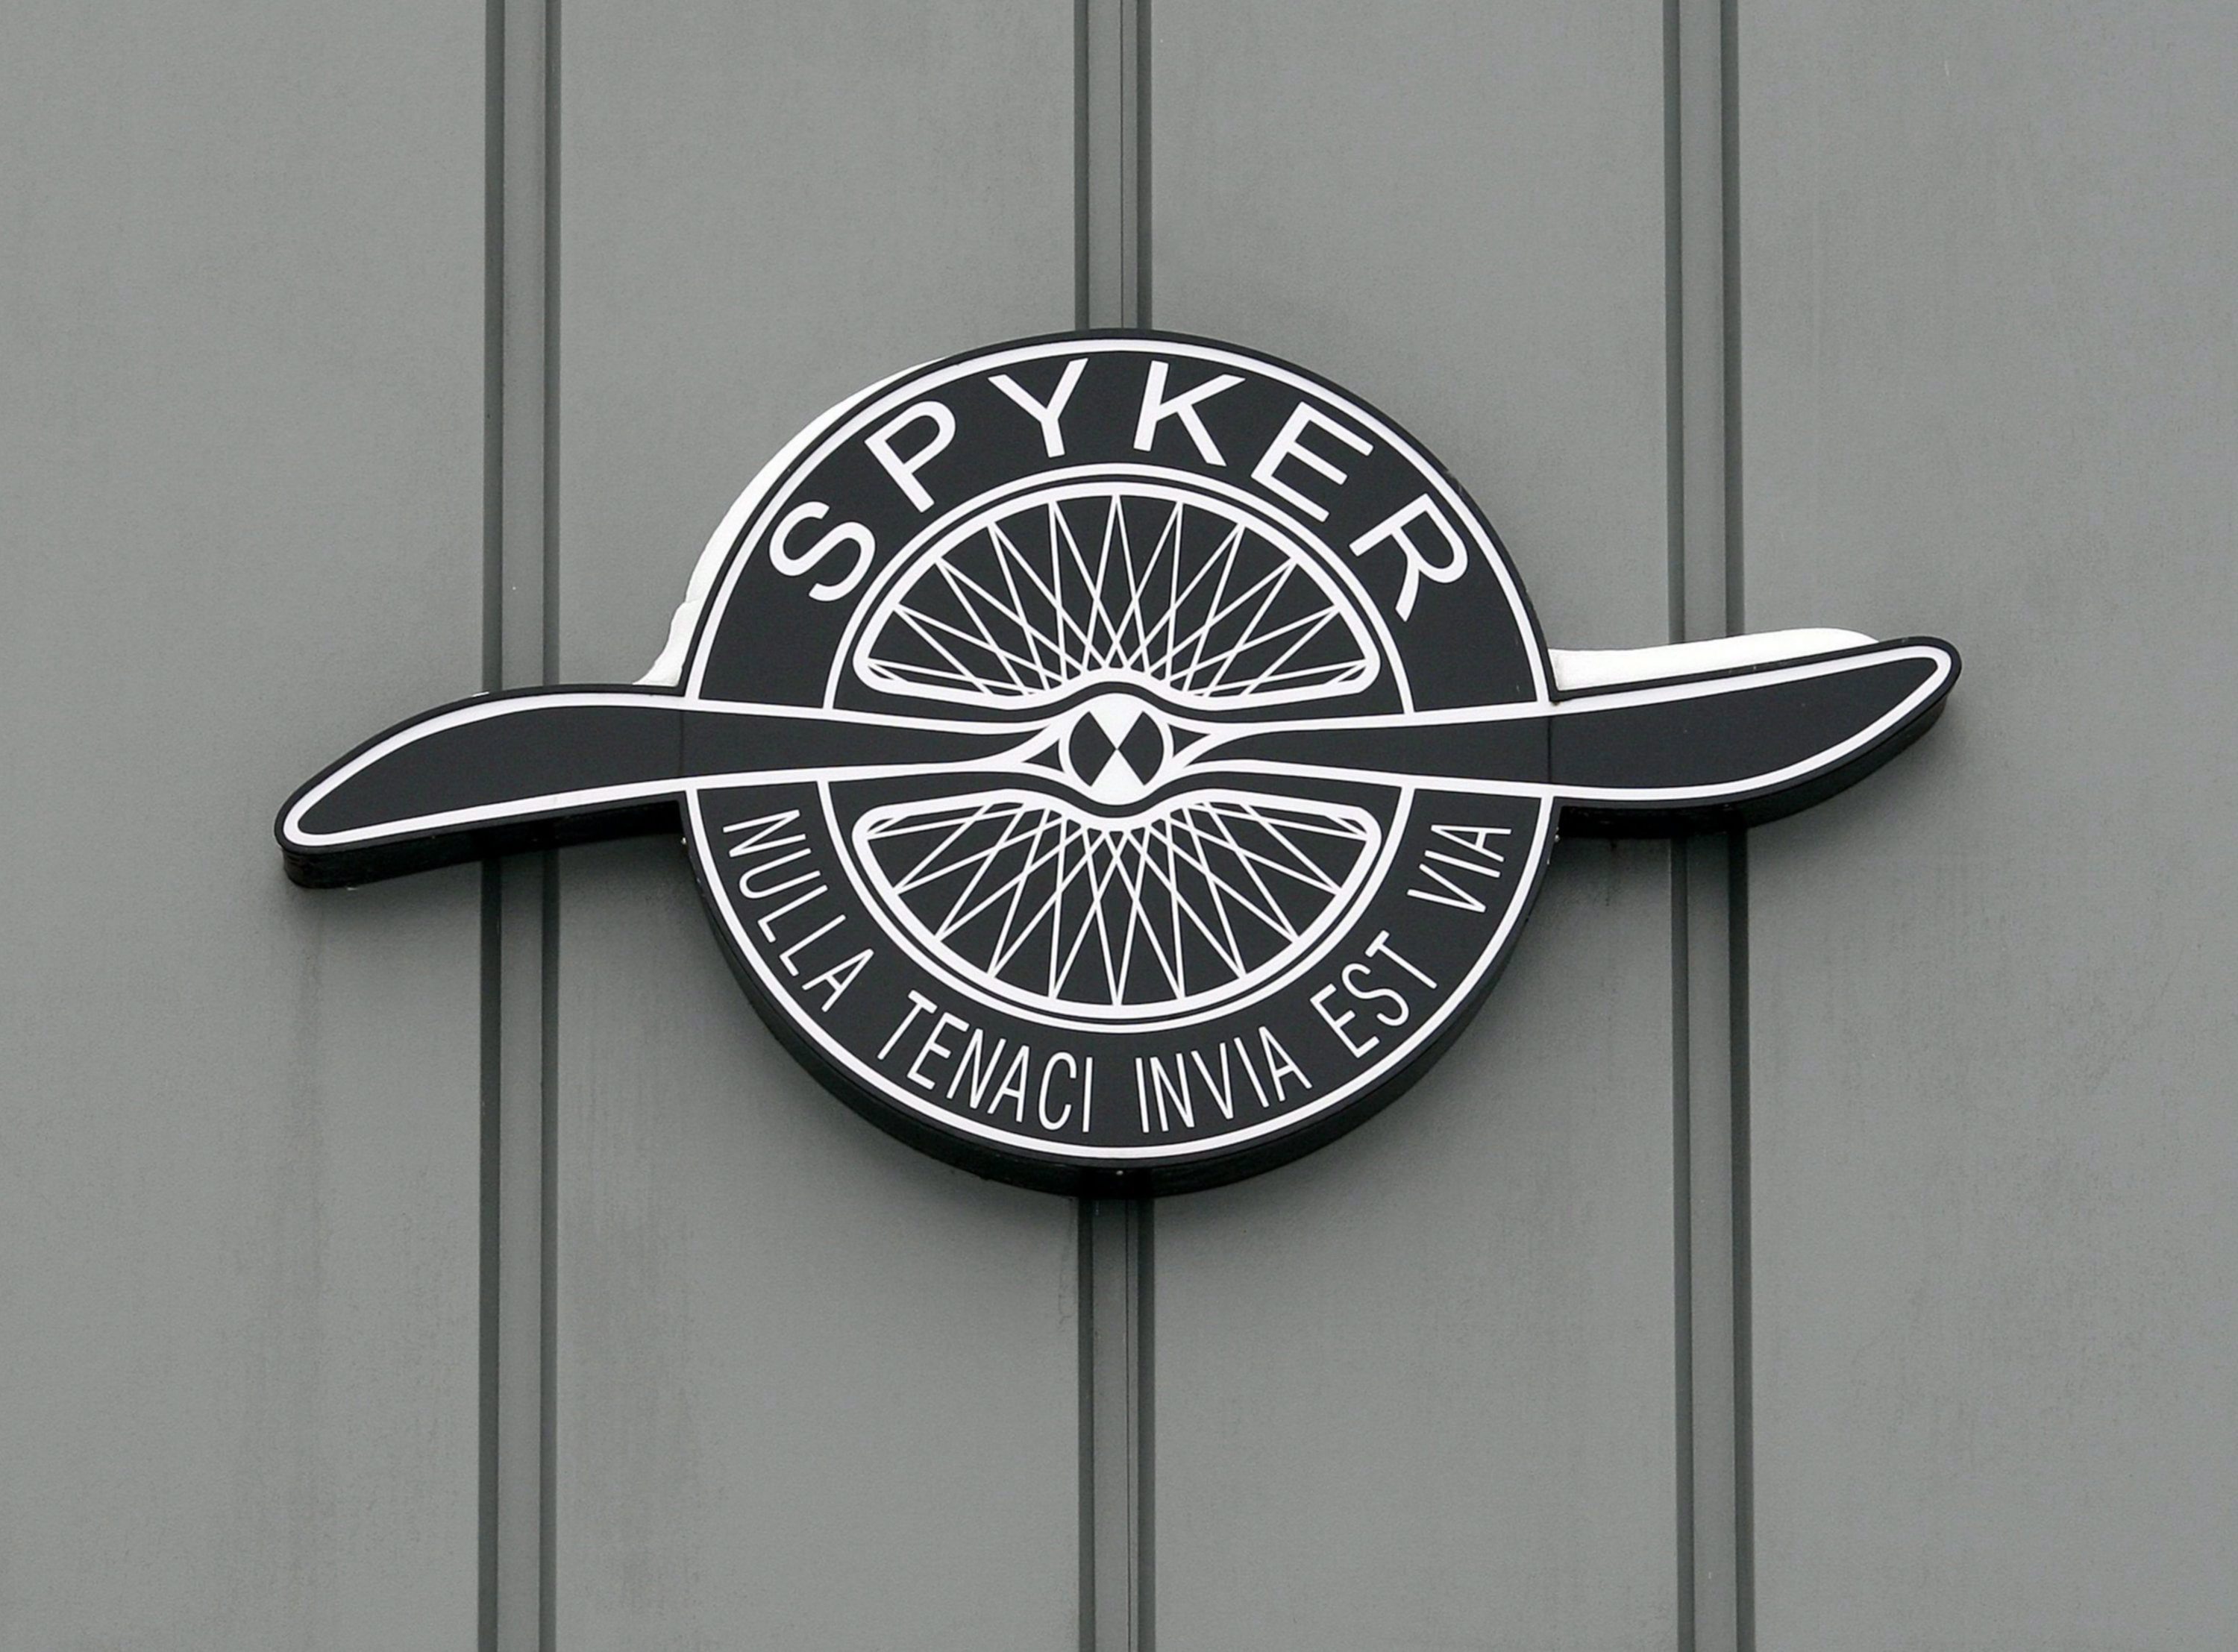 Αναθεωρεί η Spyker τους στόχoυς παραγωγής για την Saab